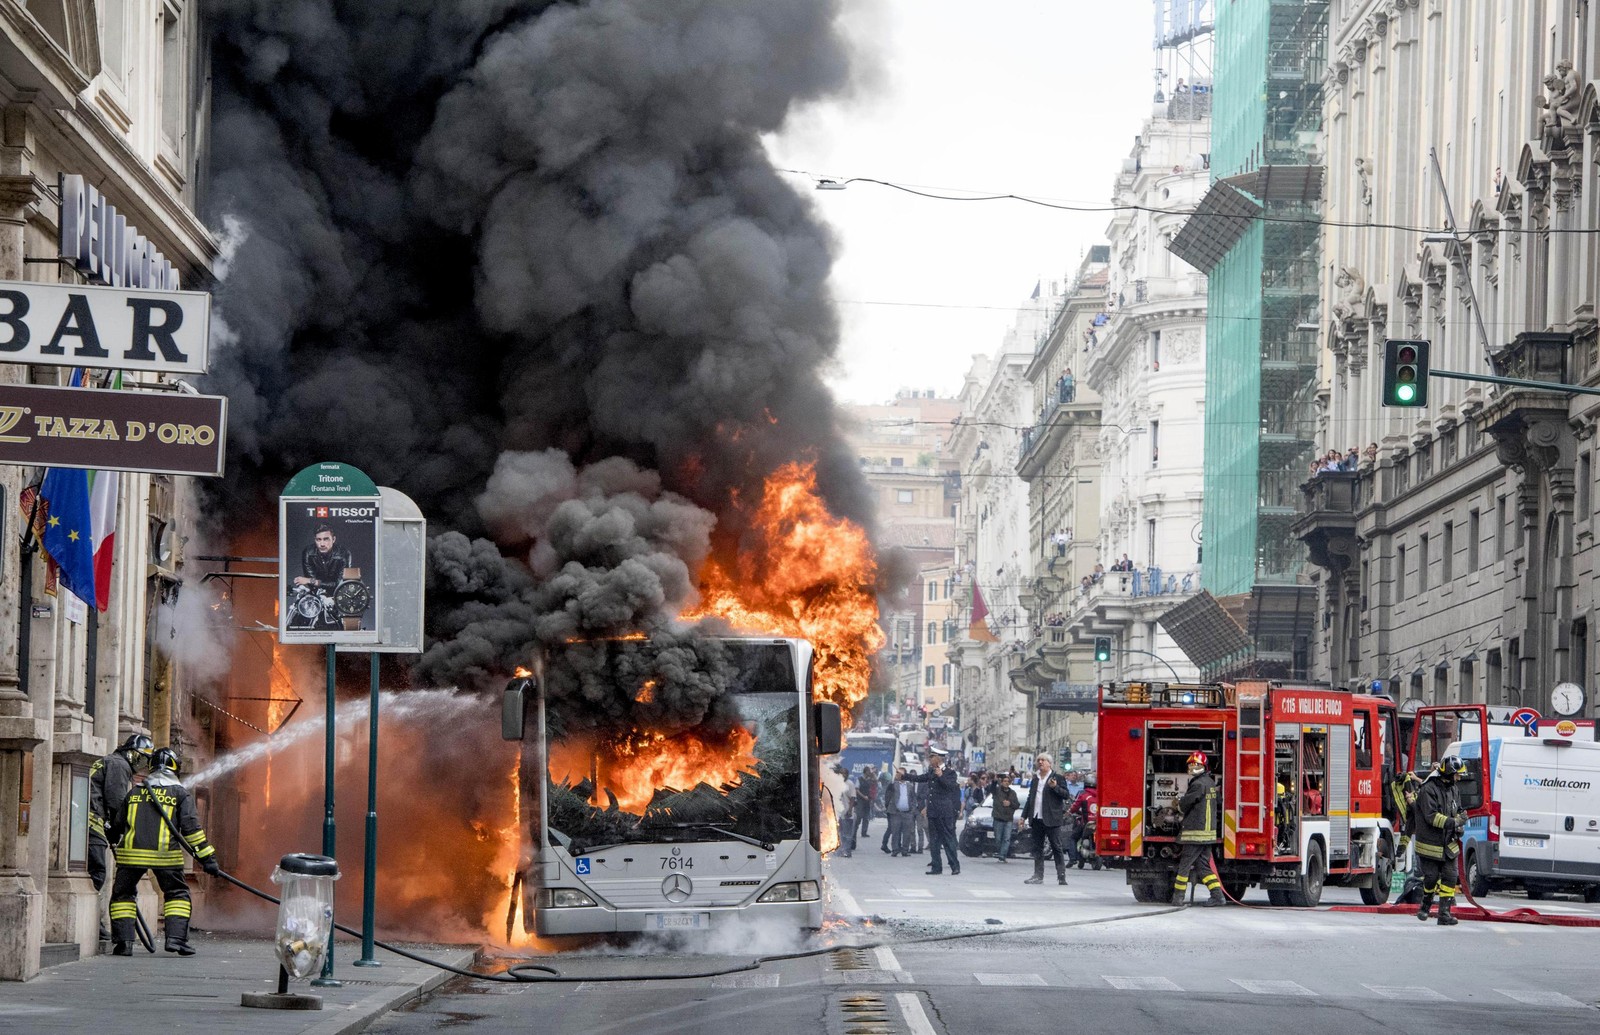 Ônibus explode no centro histórico de Roma